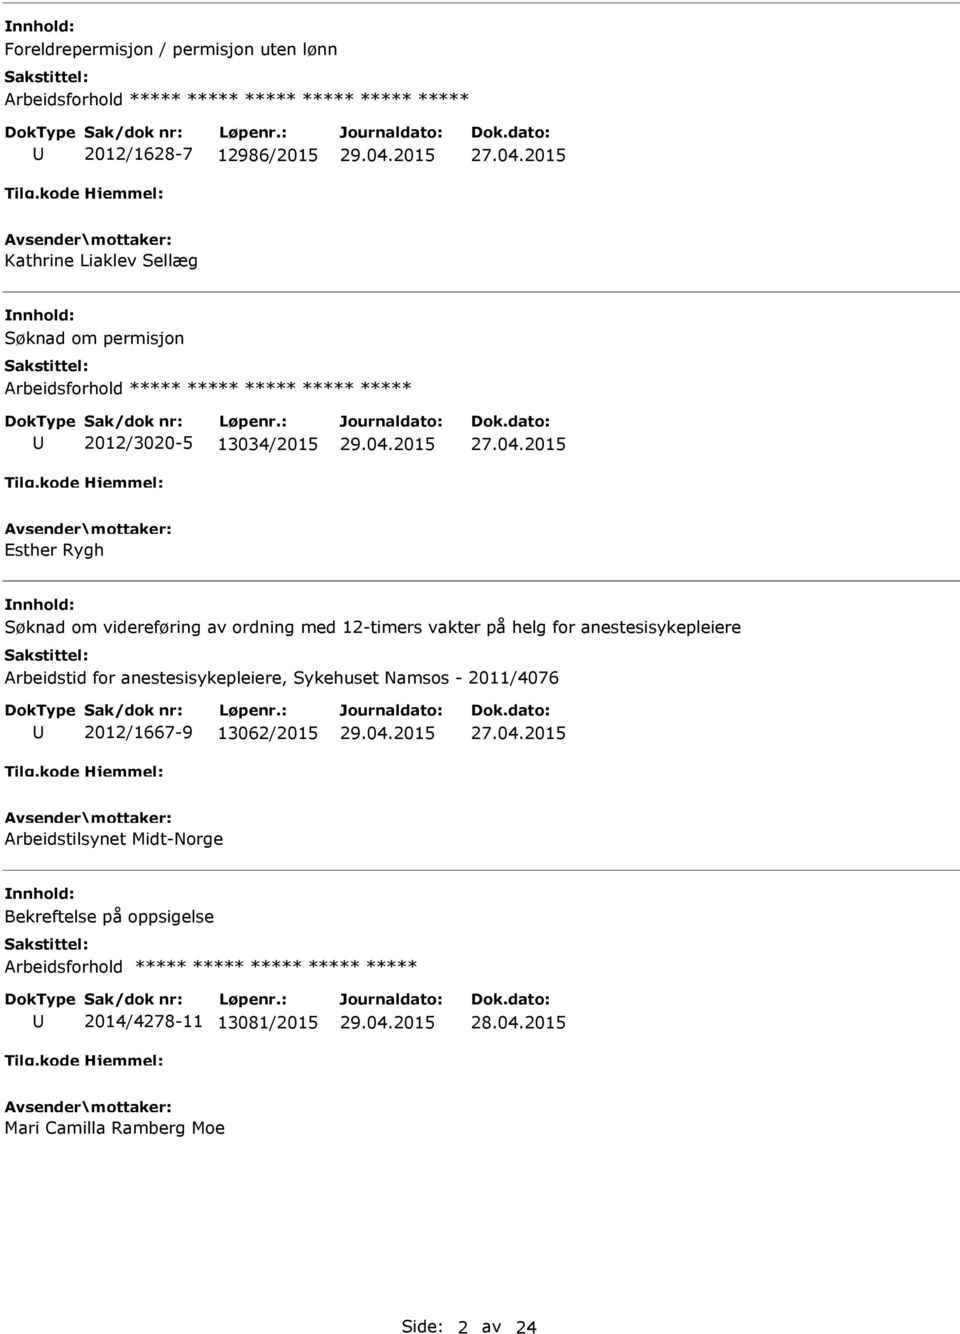 12-timers vakter på helg for anestesisykepleiere Arbeidstid for anestesisykepleiere, Sykehuset Namsos - 2011/4076 2012/1667-9 13062/2015